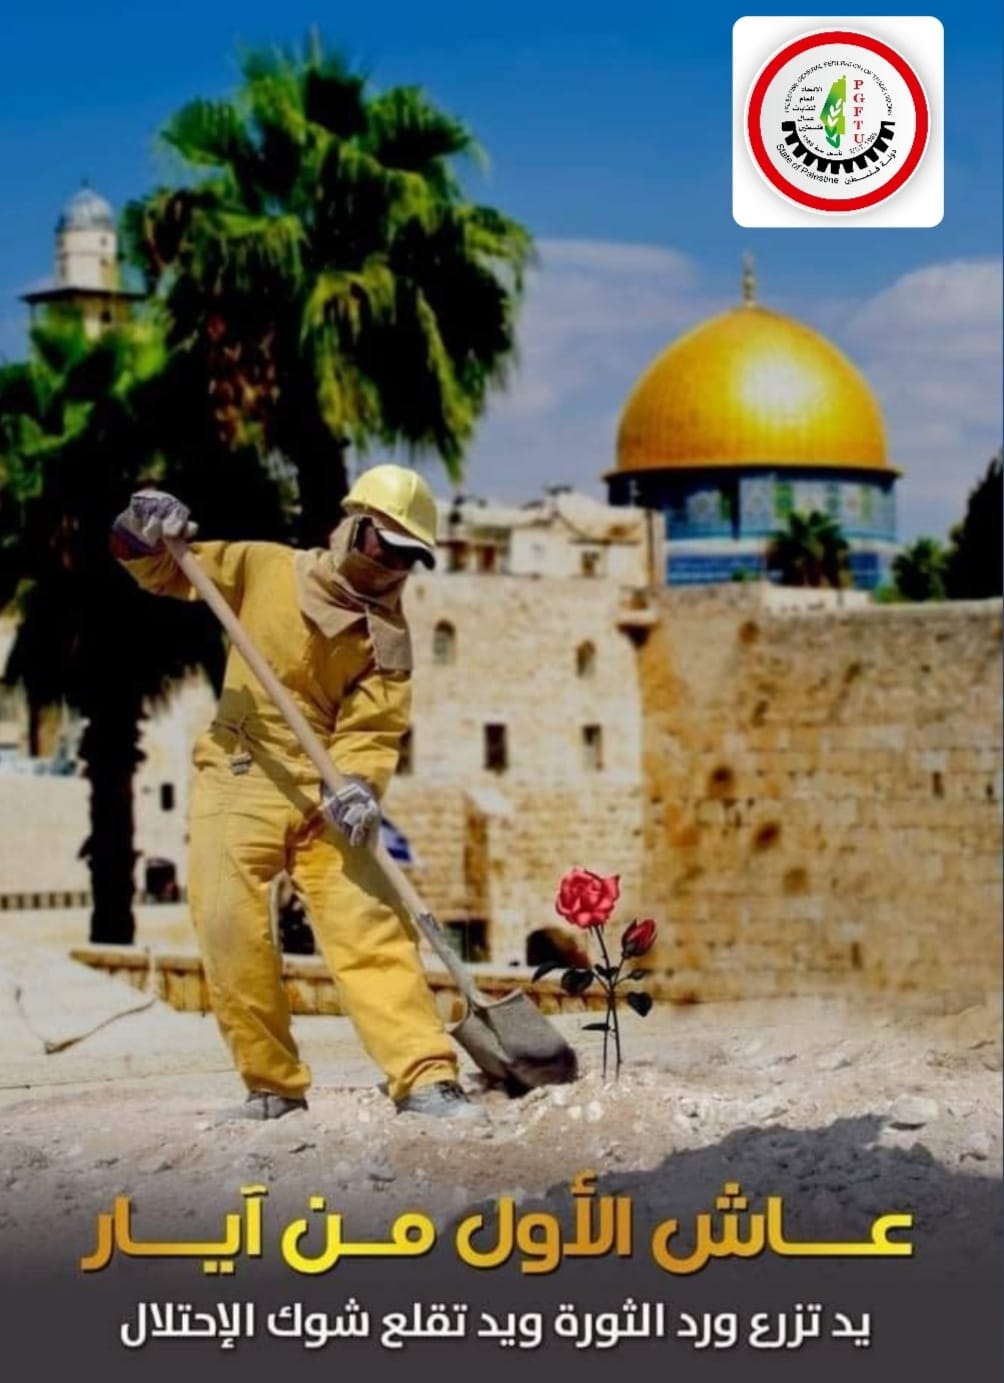 بيان صادر عن الاتحاد العام لنقابات عمال فلسطين بمناسبة يوم العمال العالمي